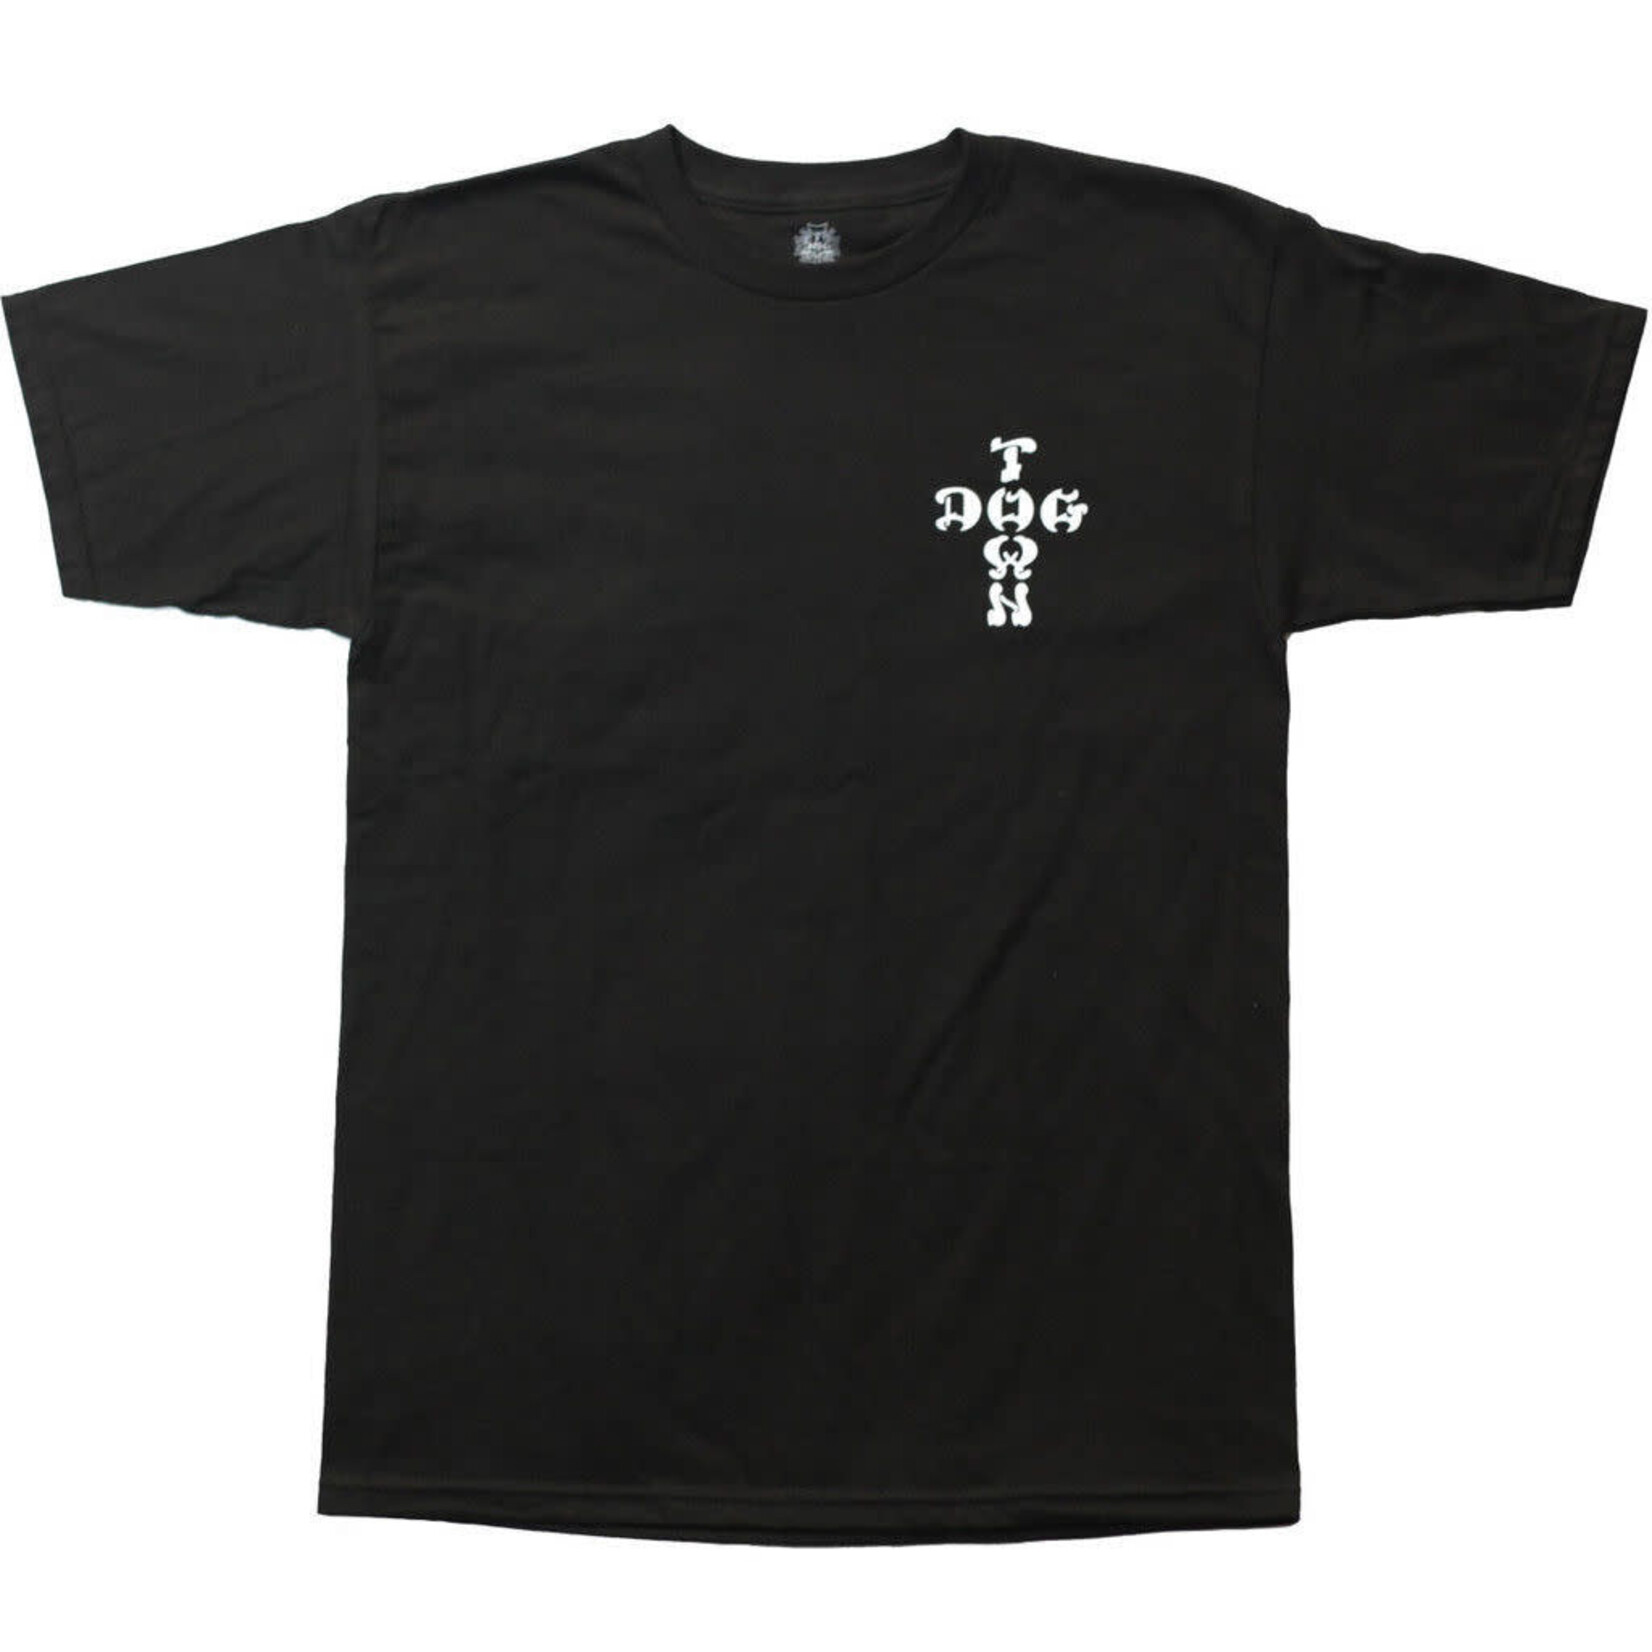 Dogtown Dogtown Scott Oster T-Shirt - Black